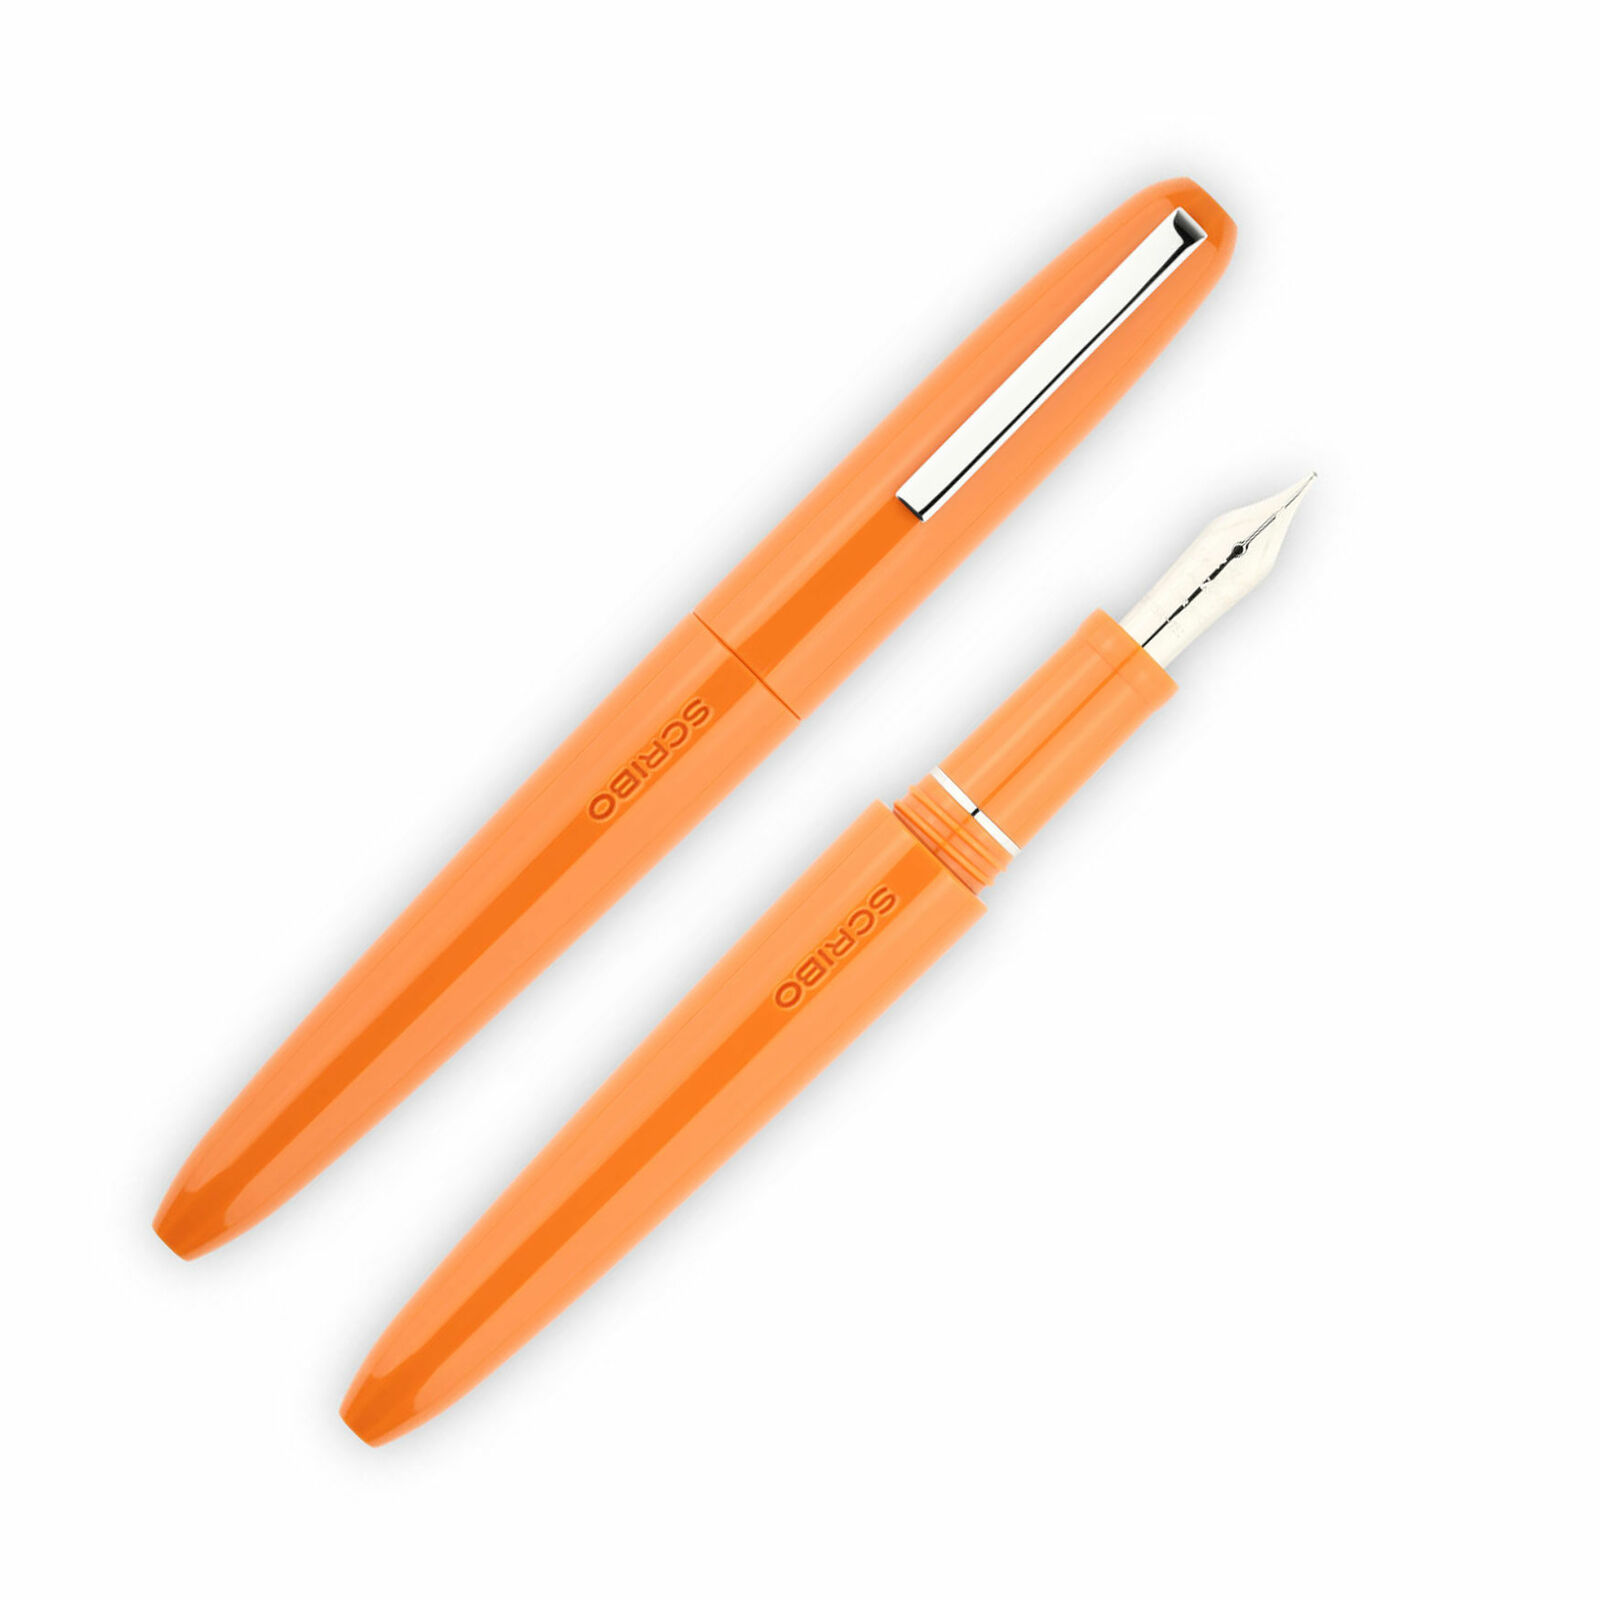 Scribo Piuma Fountain Pen in Levante Orange 18K Gold Nib - Extra Fine Point -NEW